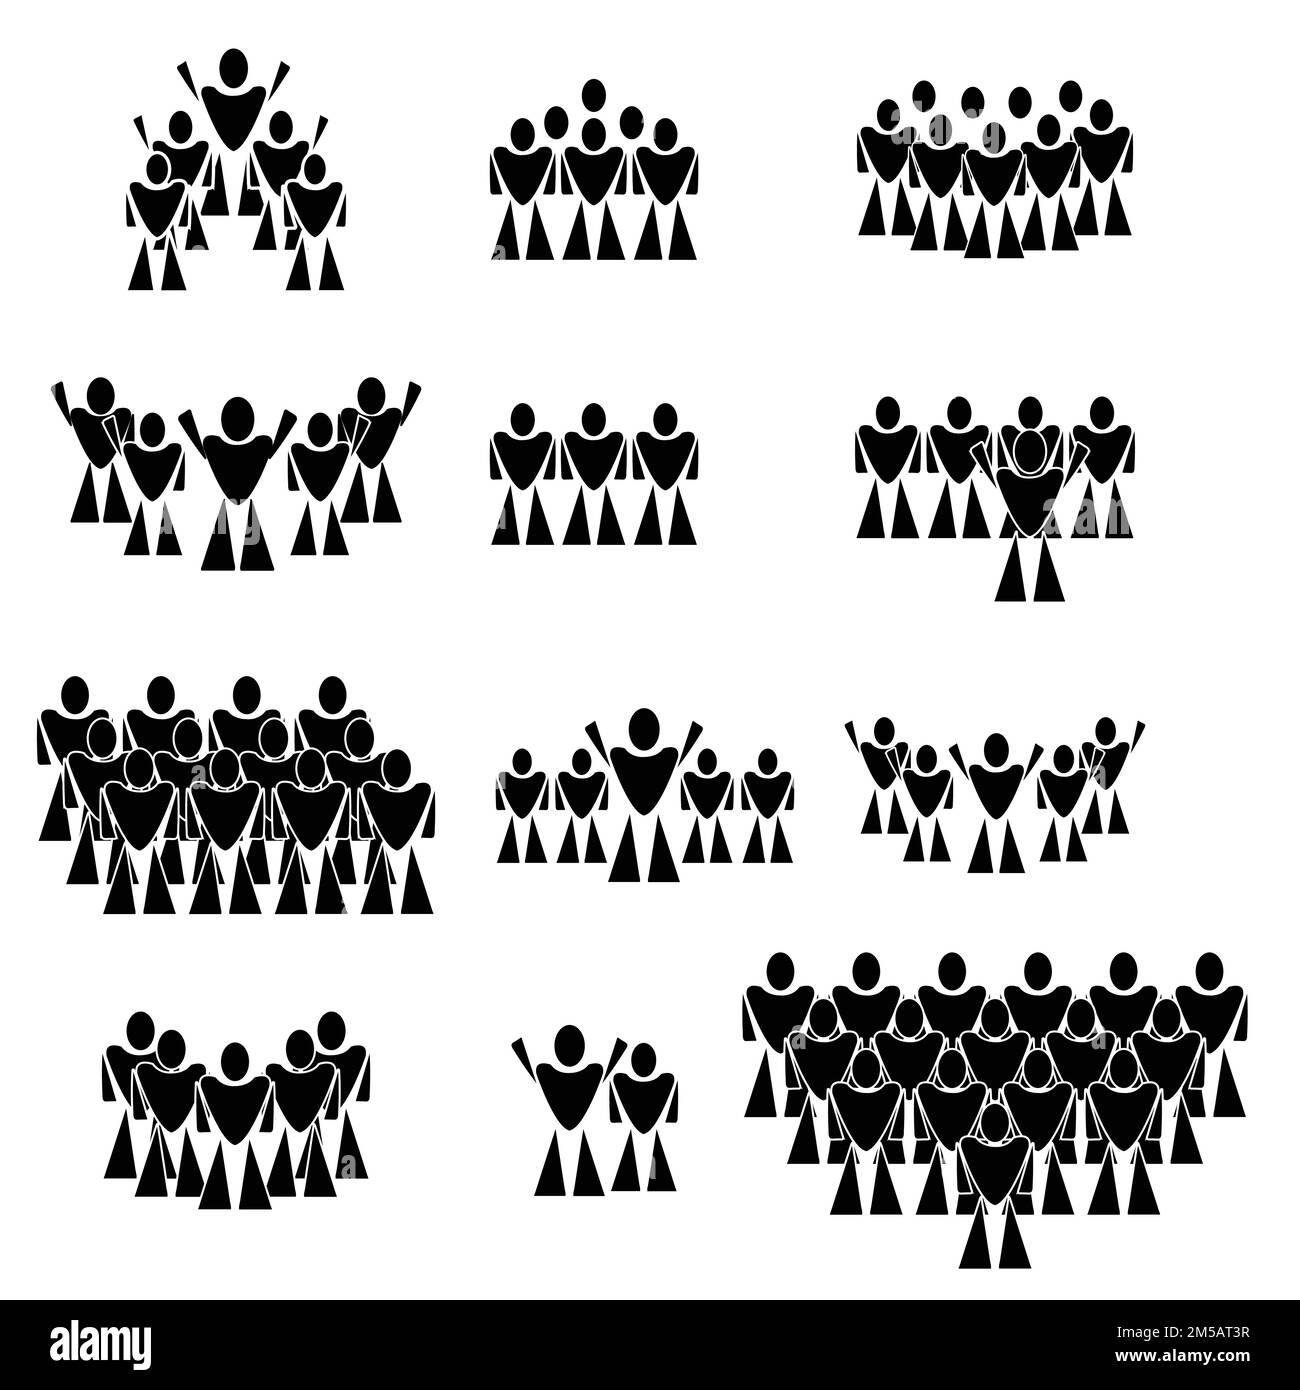 Les gens icon set ; groupe de personnes icône ; groupe de personnes ayant soulevé la main ; Vector illusration ; isolé sur fond blanc Illustration de Vecteur